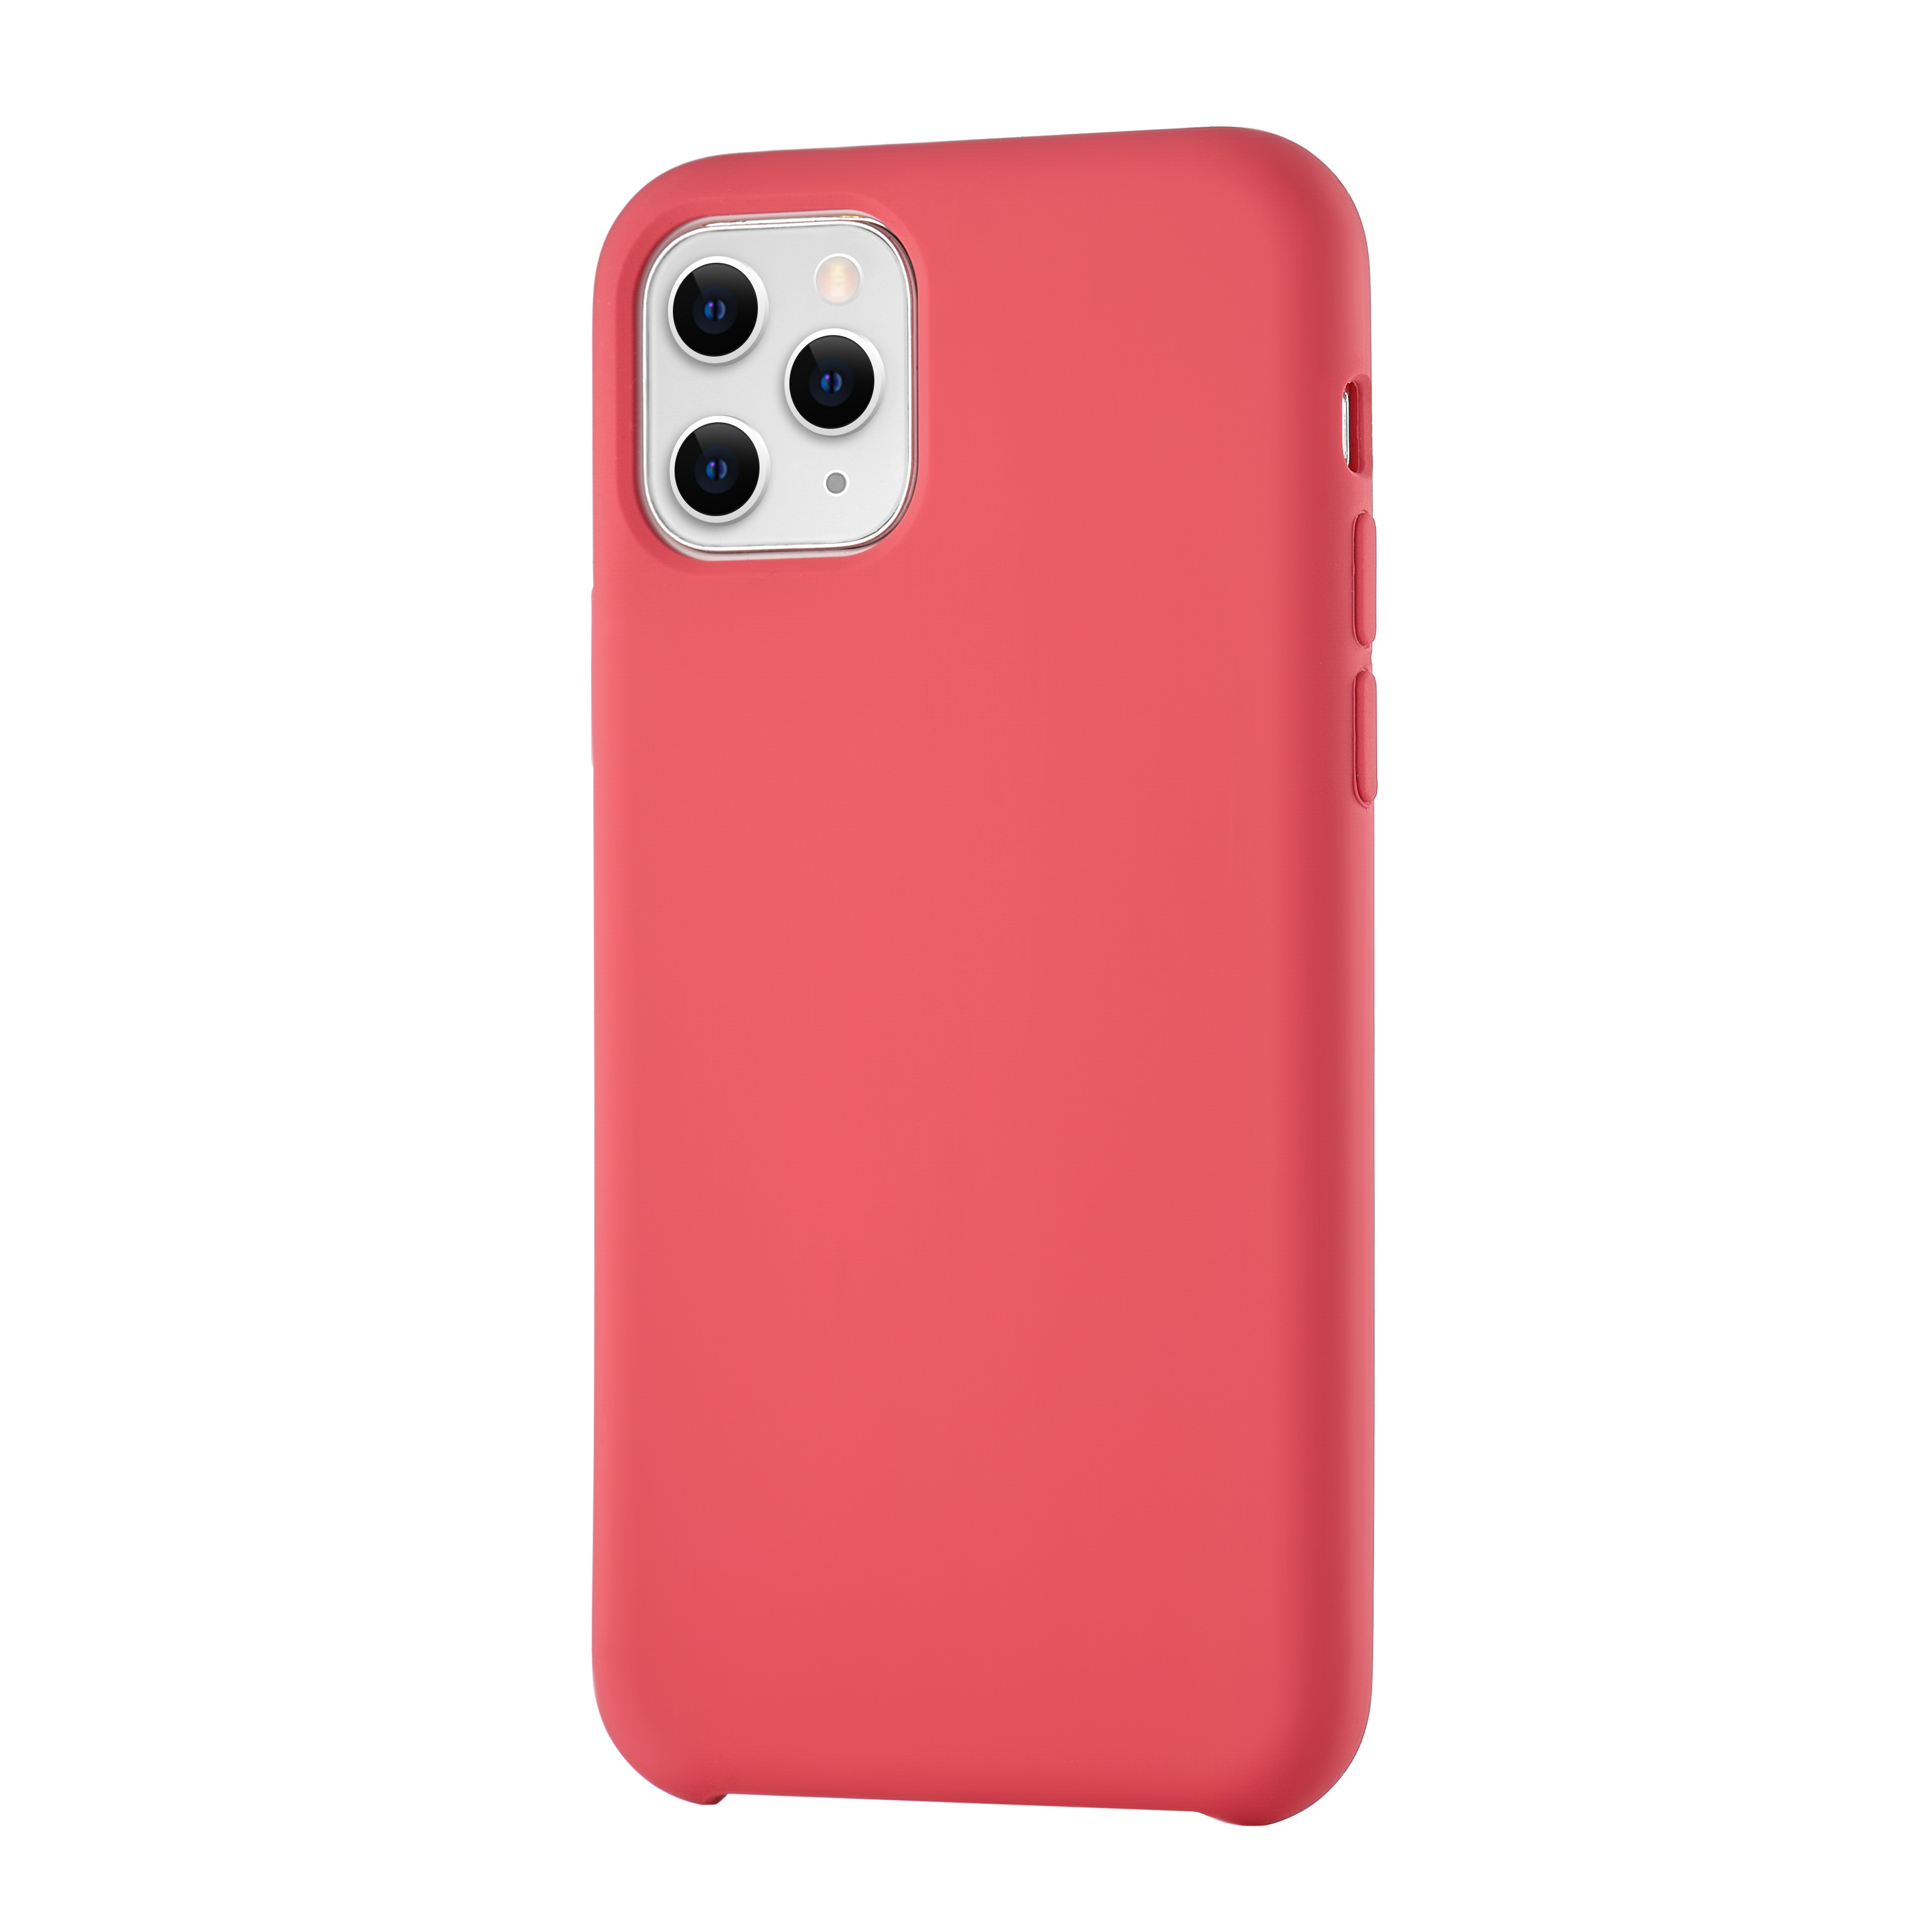 Чехол uBear для iPhone 11 Pro, силикон soft touch, красный